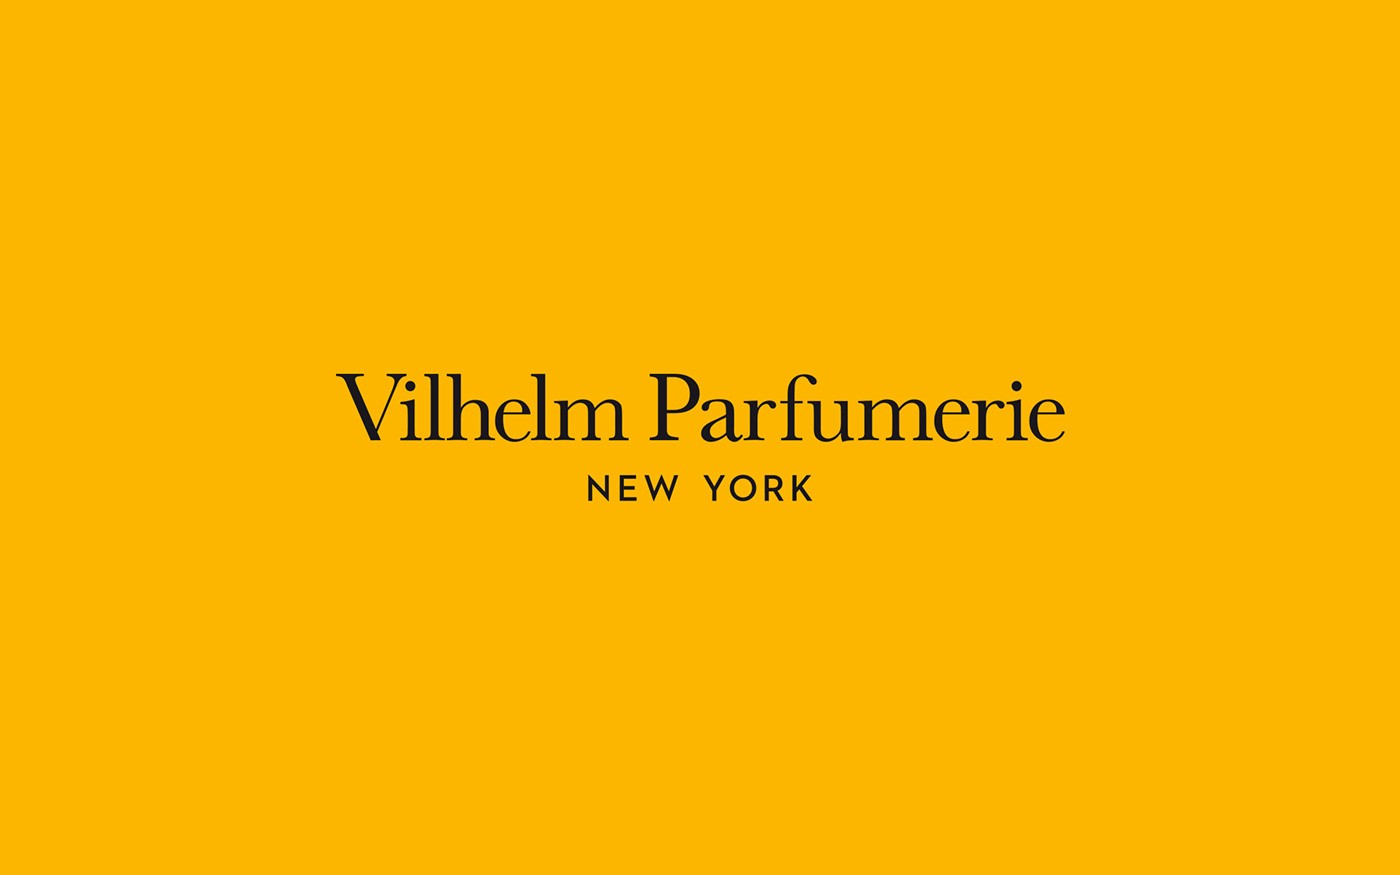 Vilhelm Parfume